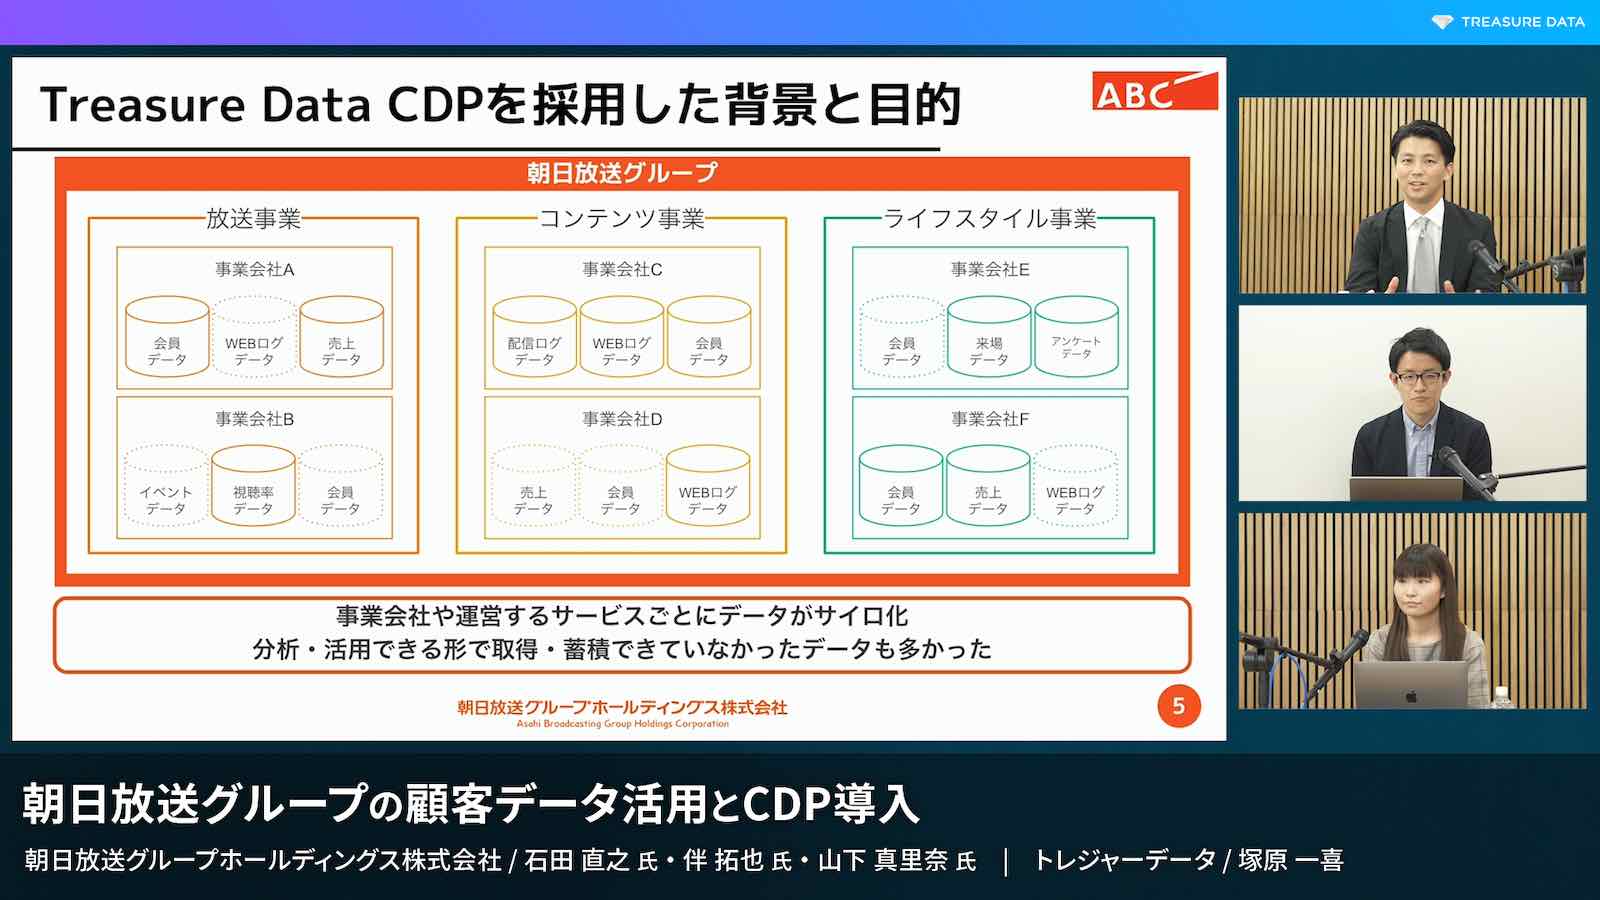 スライド 「Treasure Data CDPを採用した背景と目的」